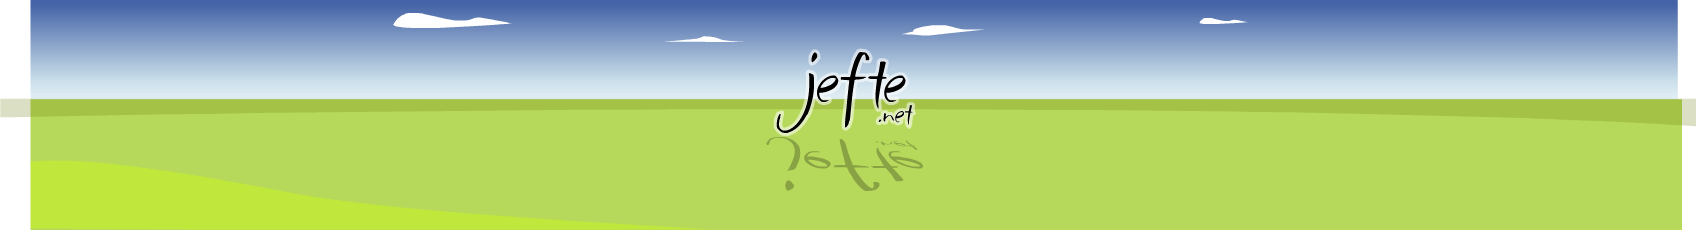 jefte-logo.png